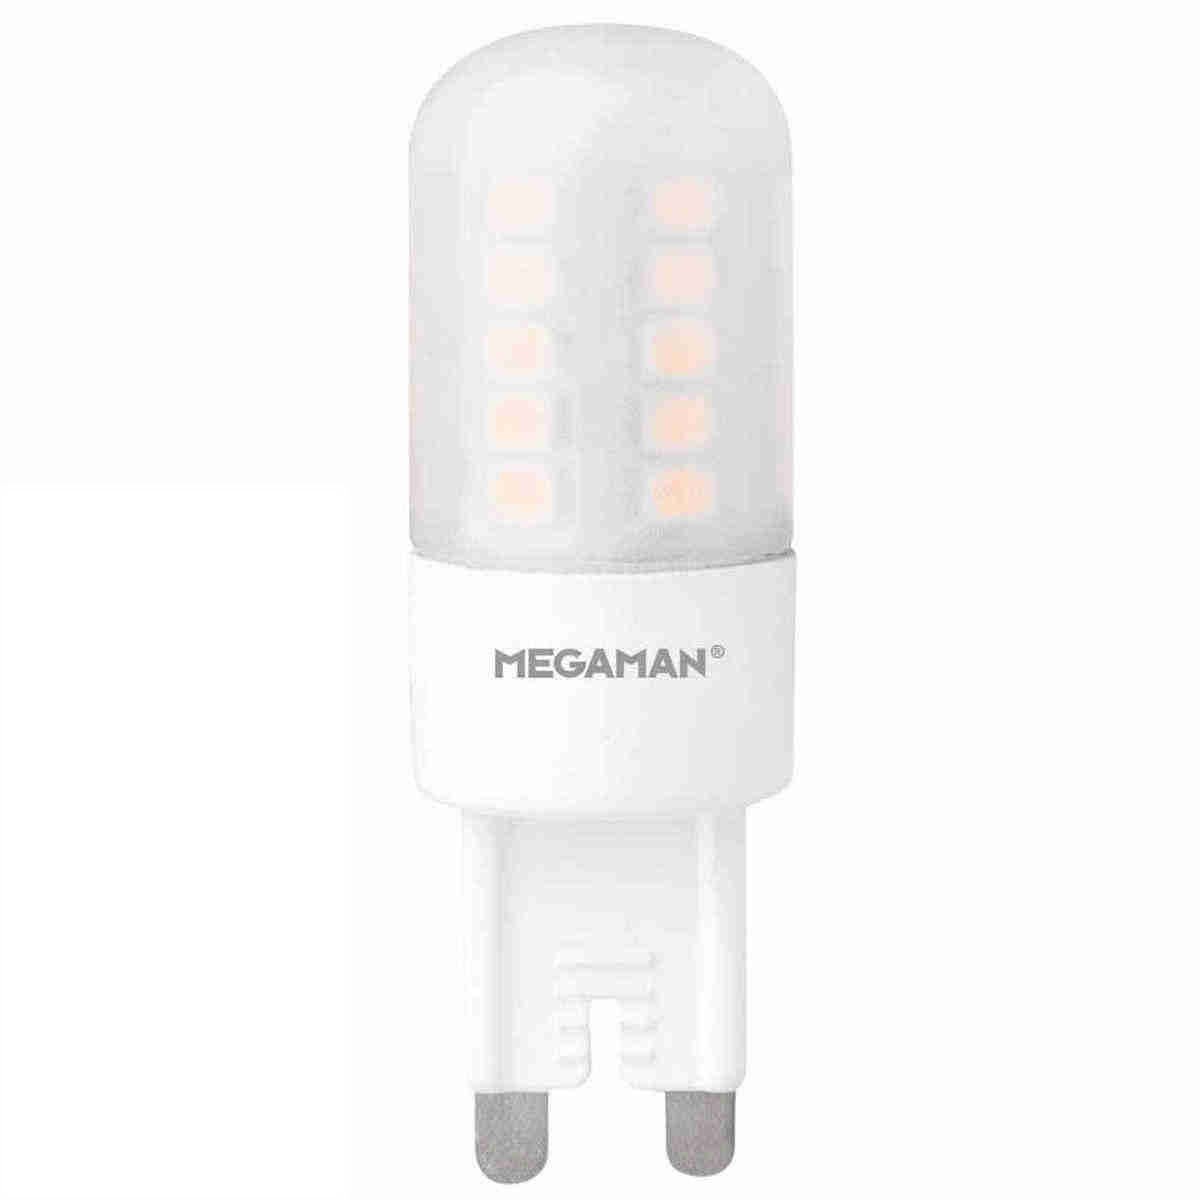 Megaman LED G9 Filament-Stiftsockellampe 3,5 Watt 828 warmweiß extra 330 Lumen 330 Grad 230 Volt